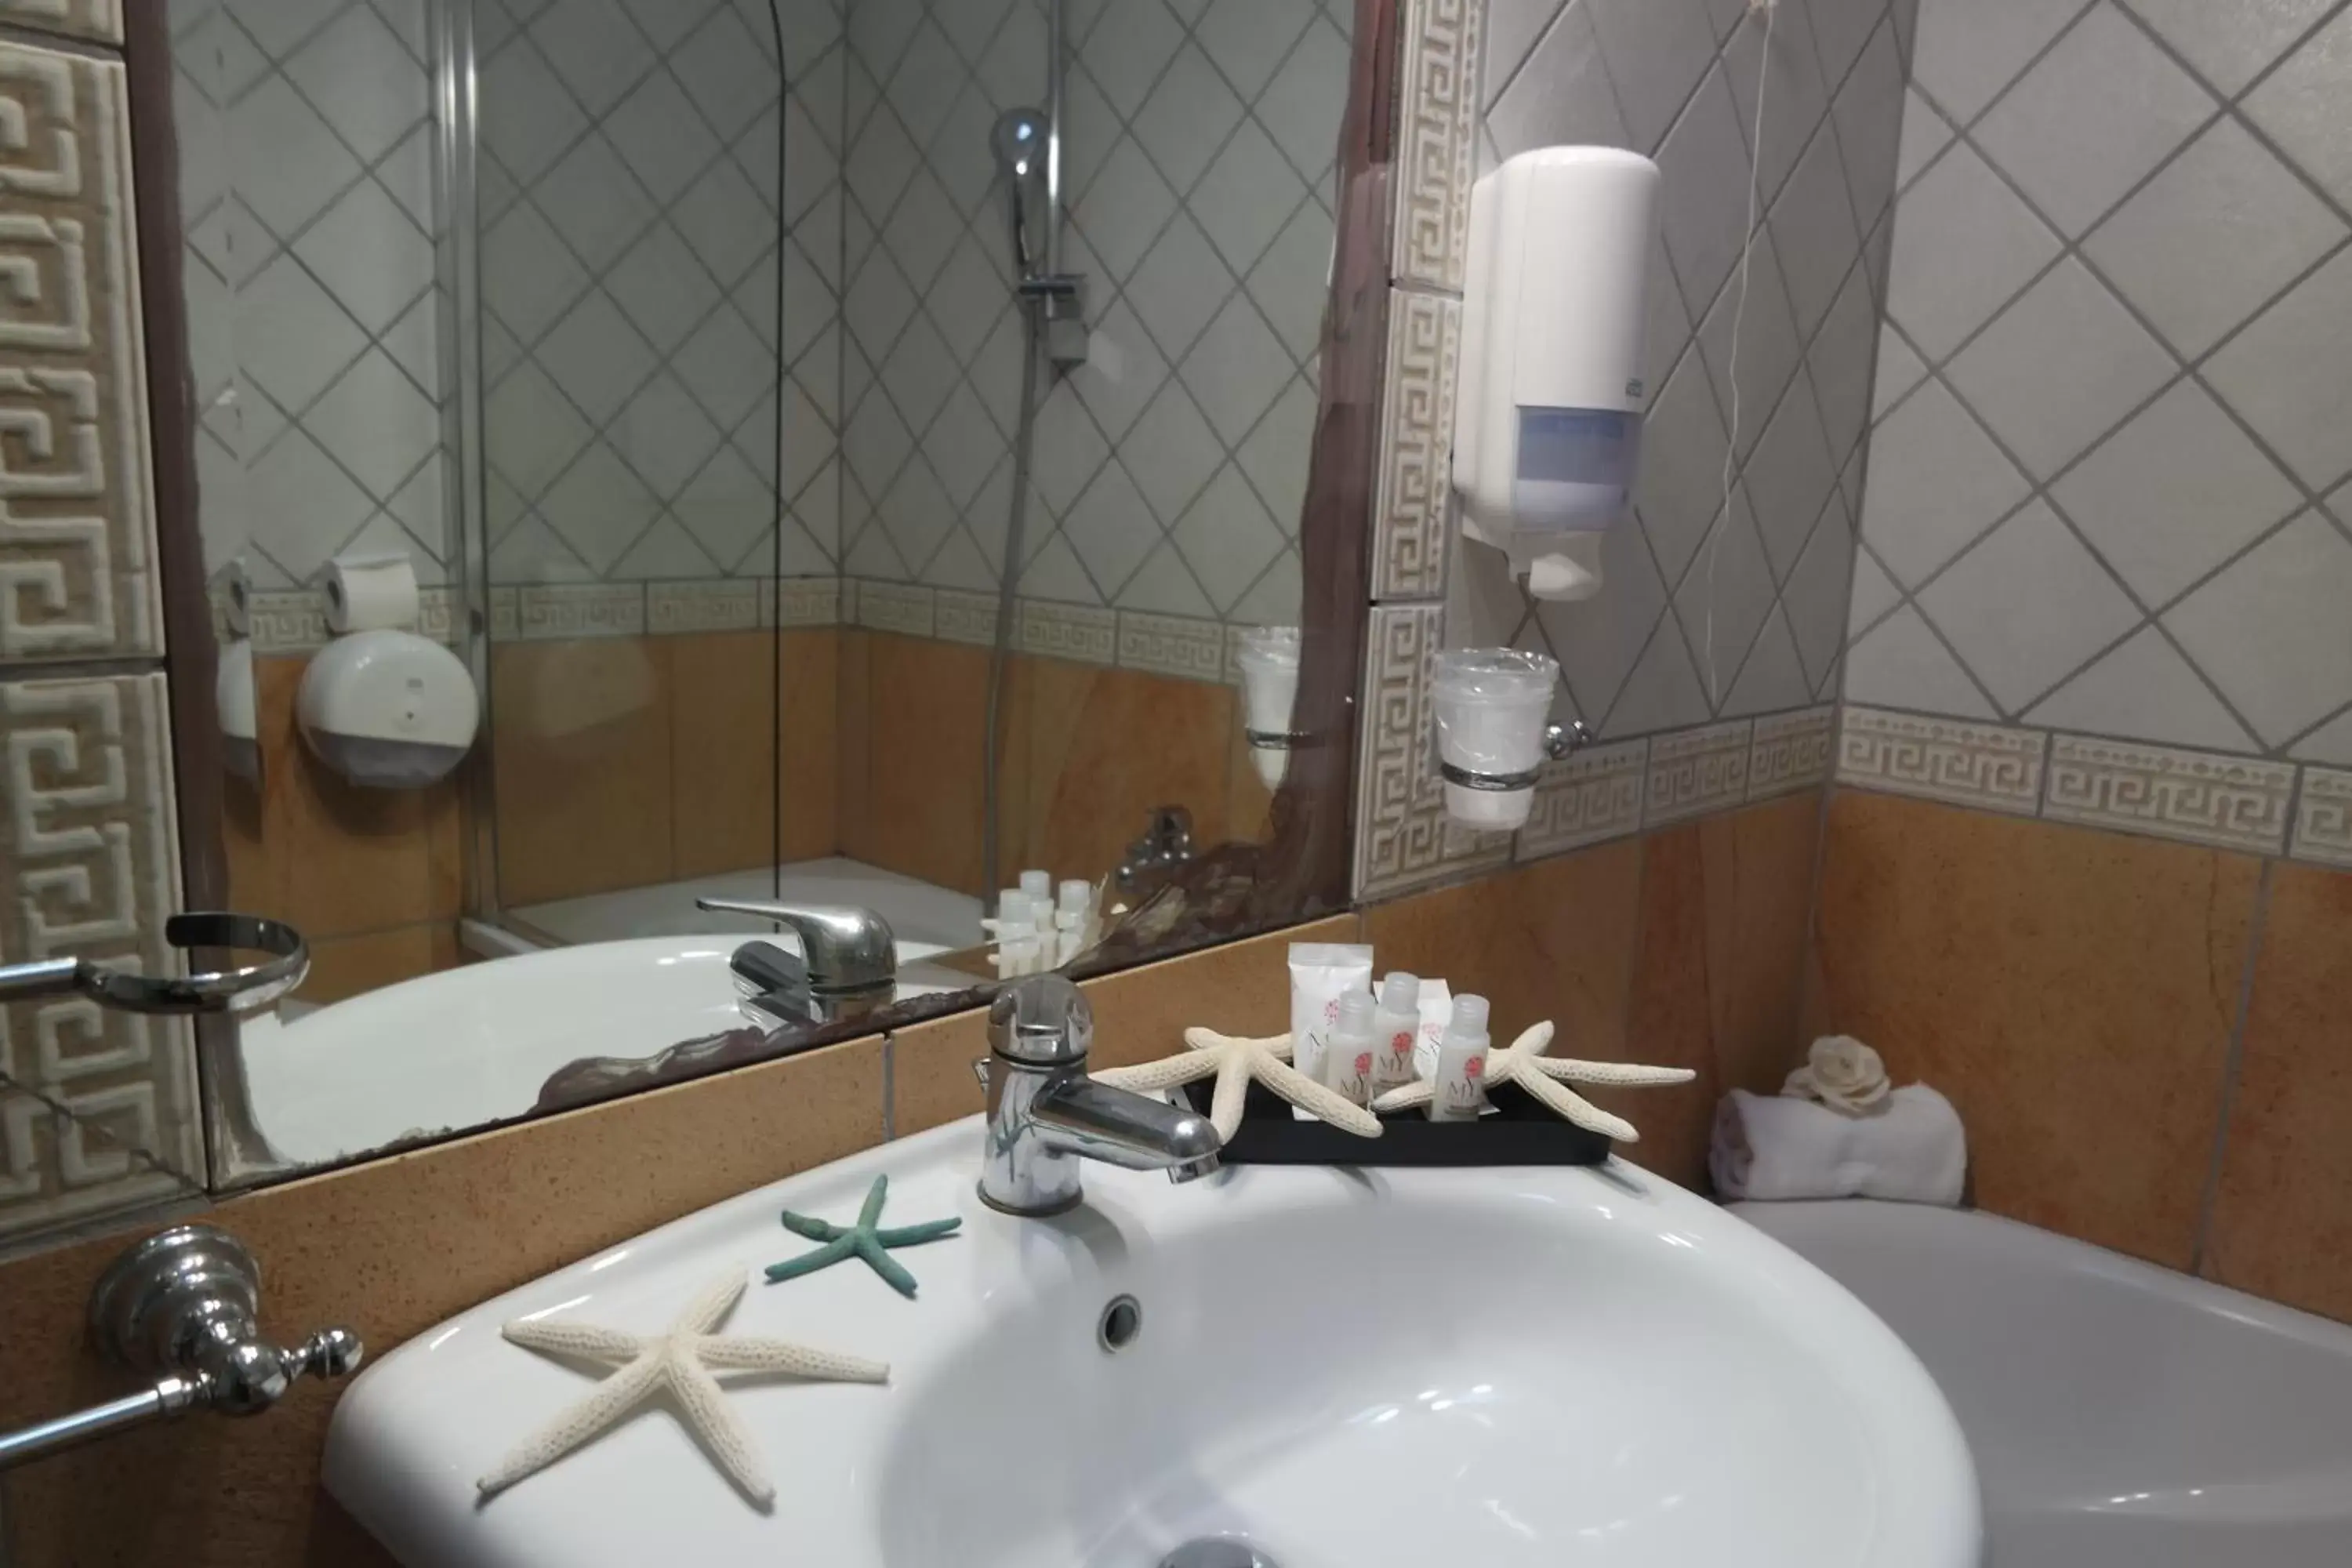 Bathroom in Santa Caterina